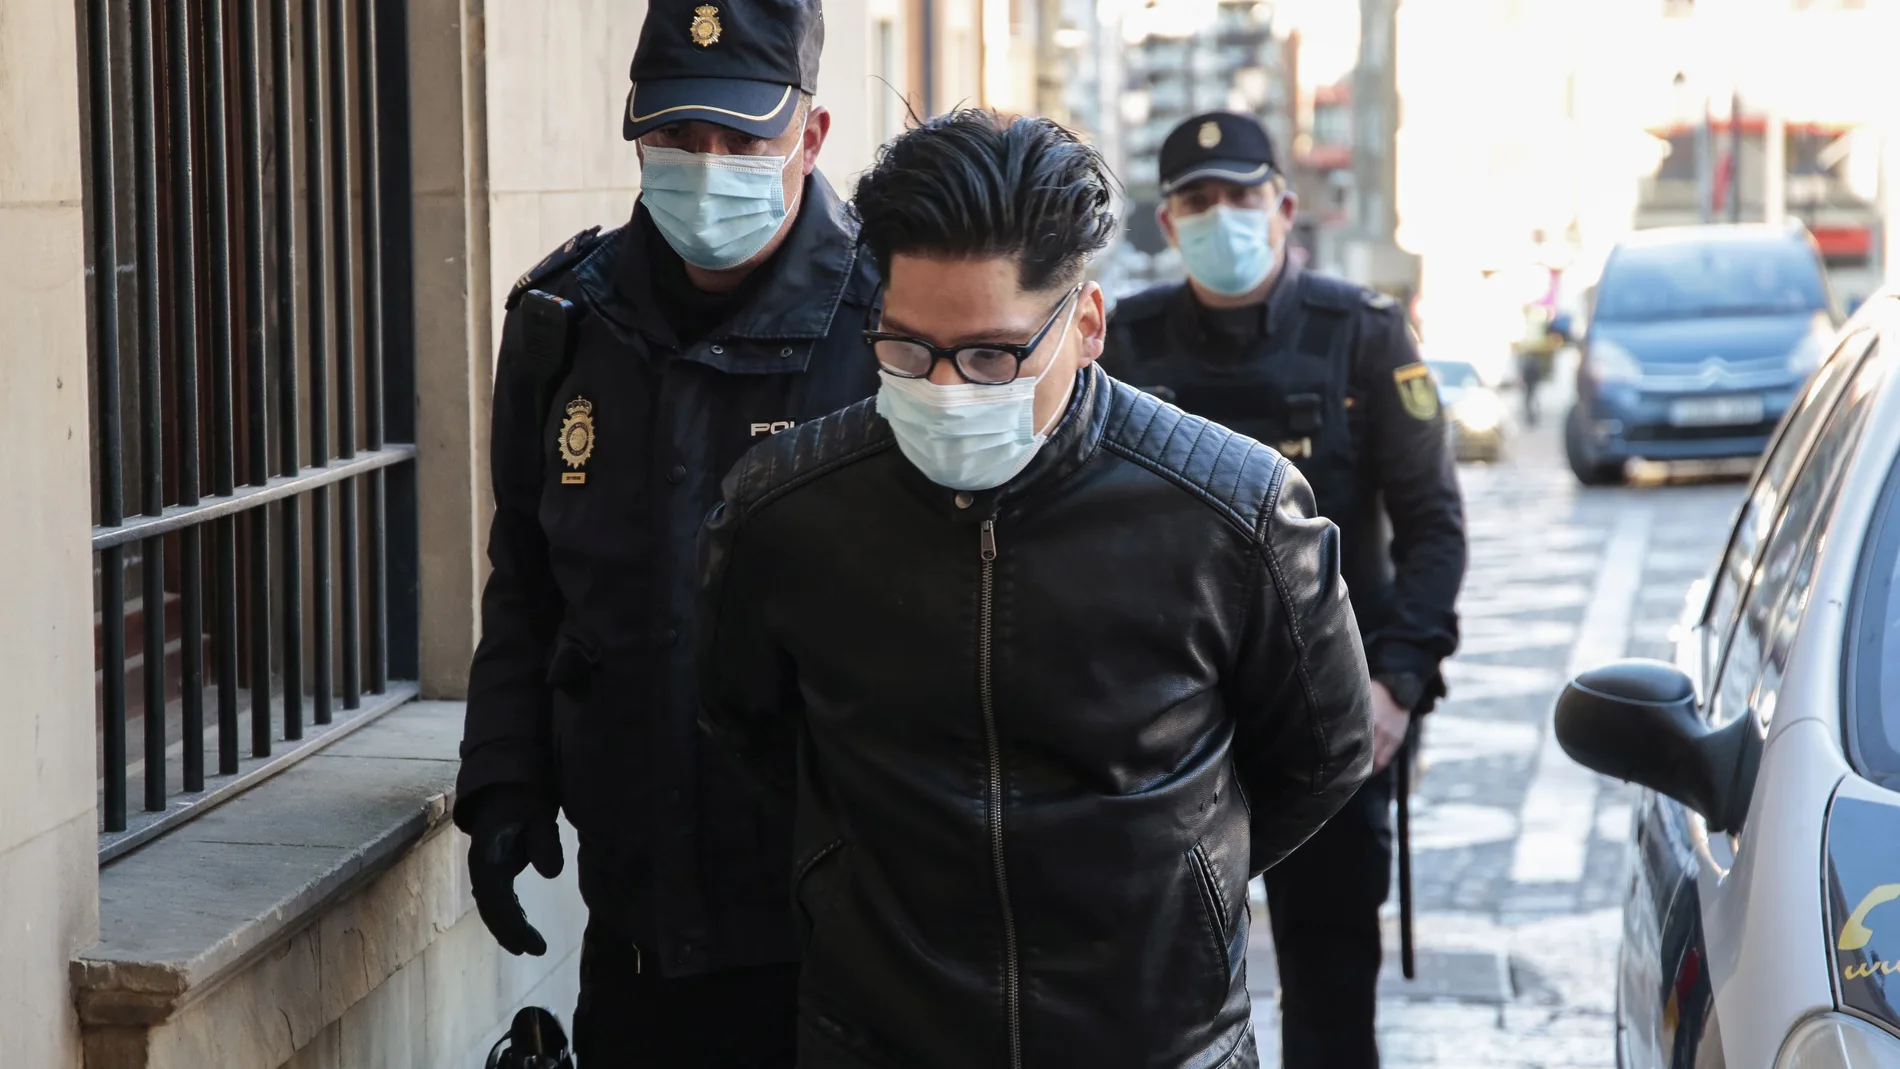 Condenan a 26 años y medio de prisión al acusado de asesinar a un hombre en San Andrés del Rabanedo (León) tras robarle